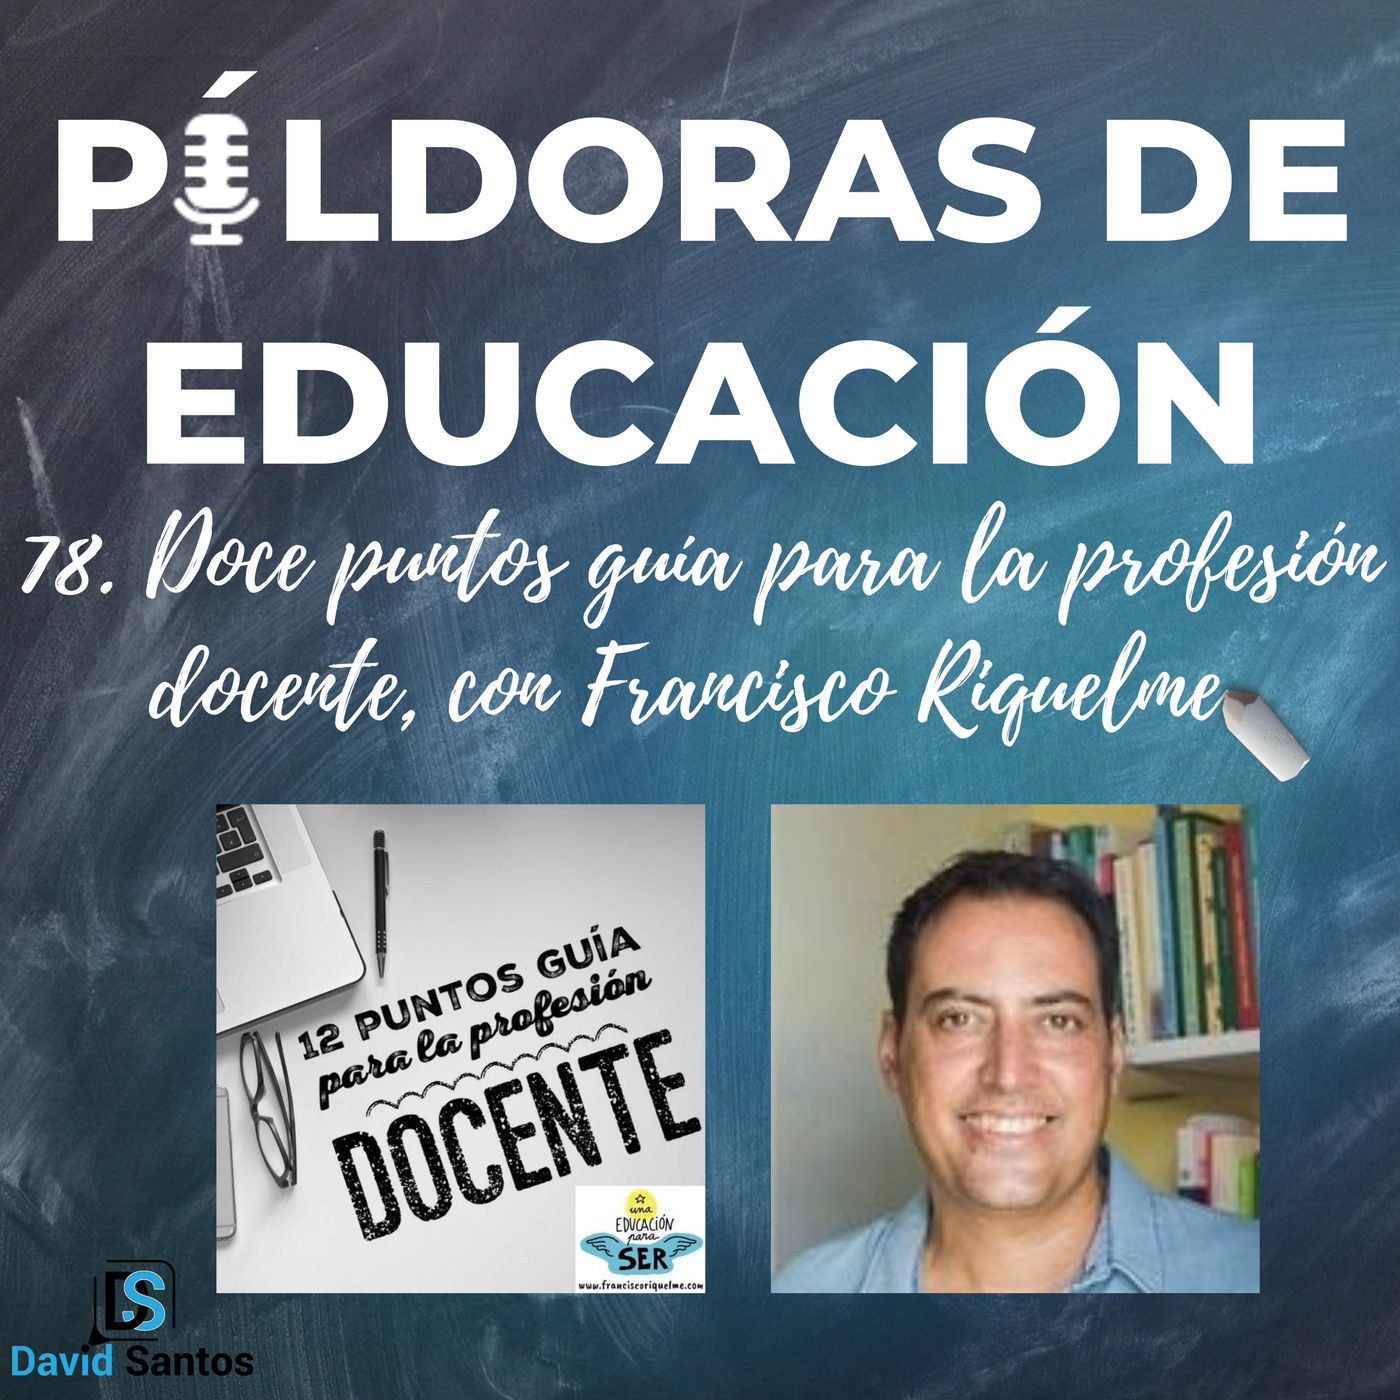 PDE78 - Doce puntos guía para la profesión docente, con Francisco Riquelme